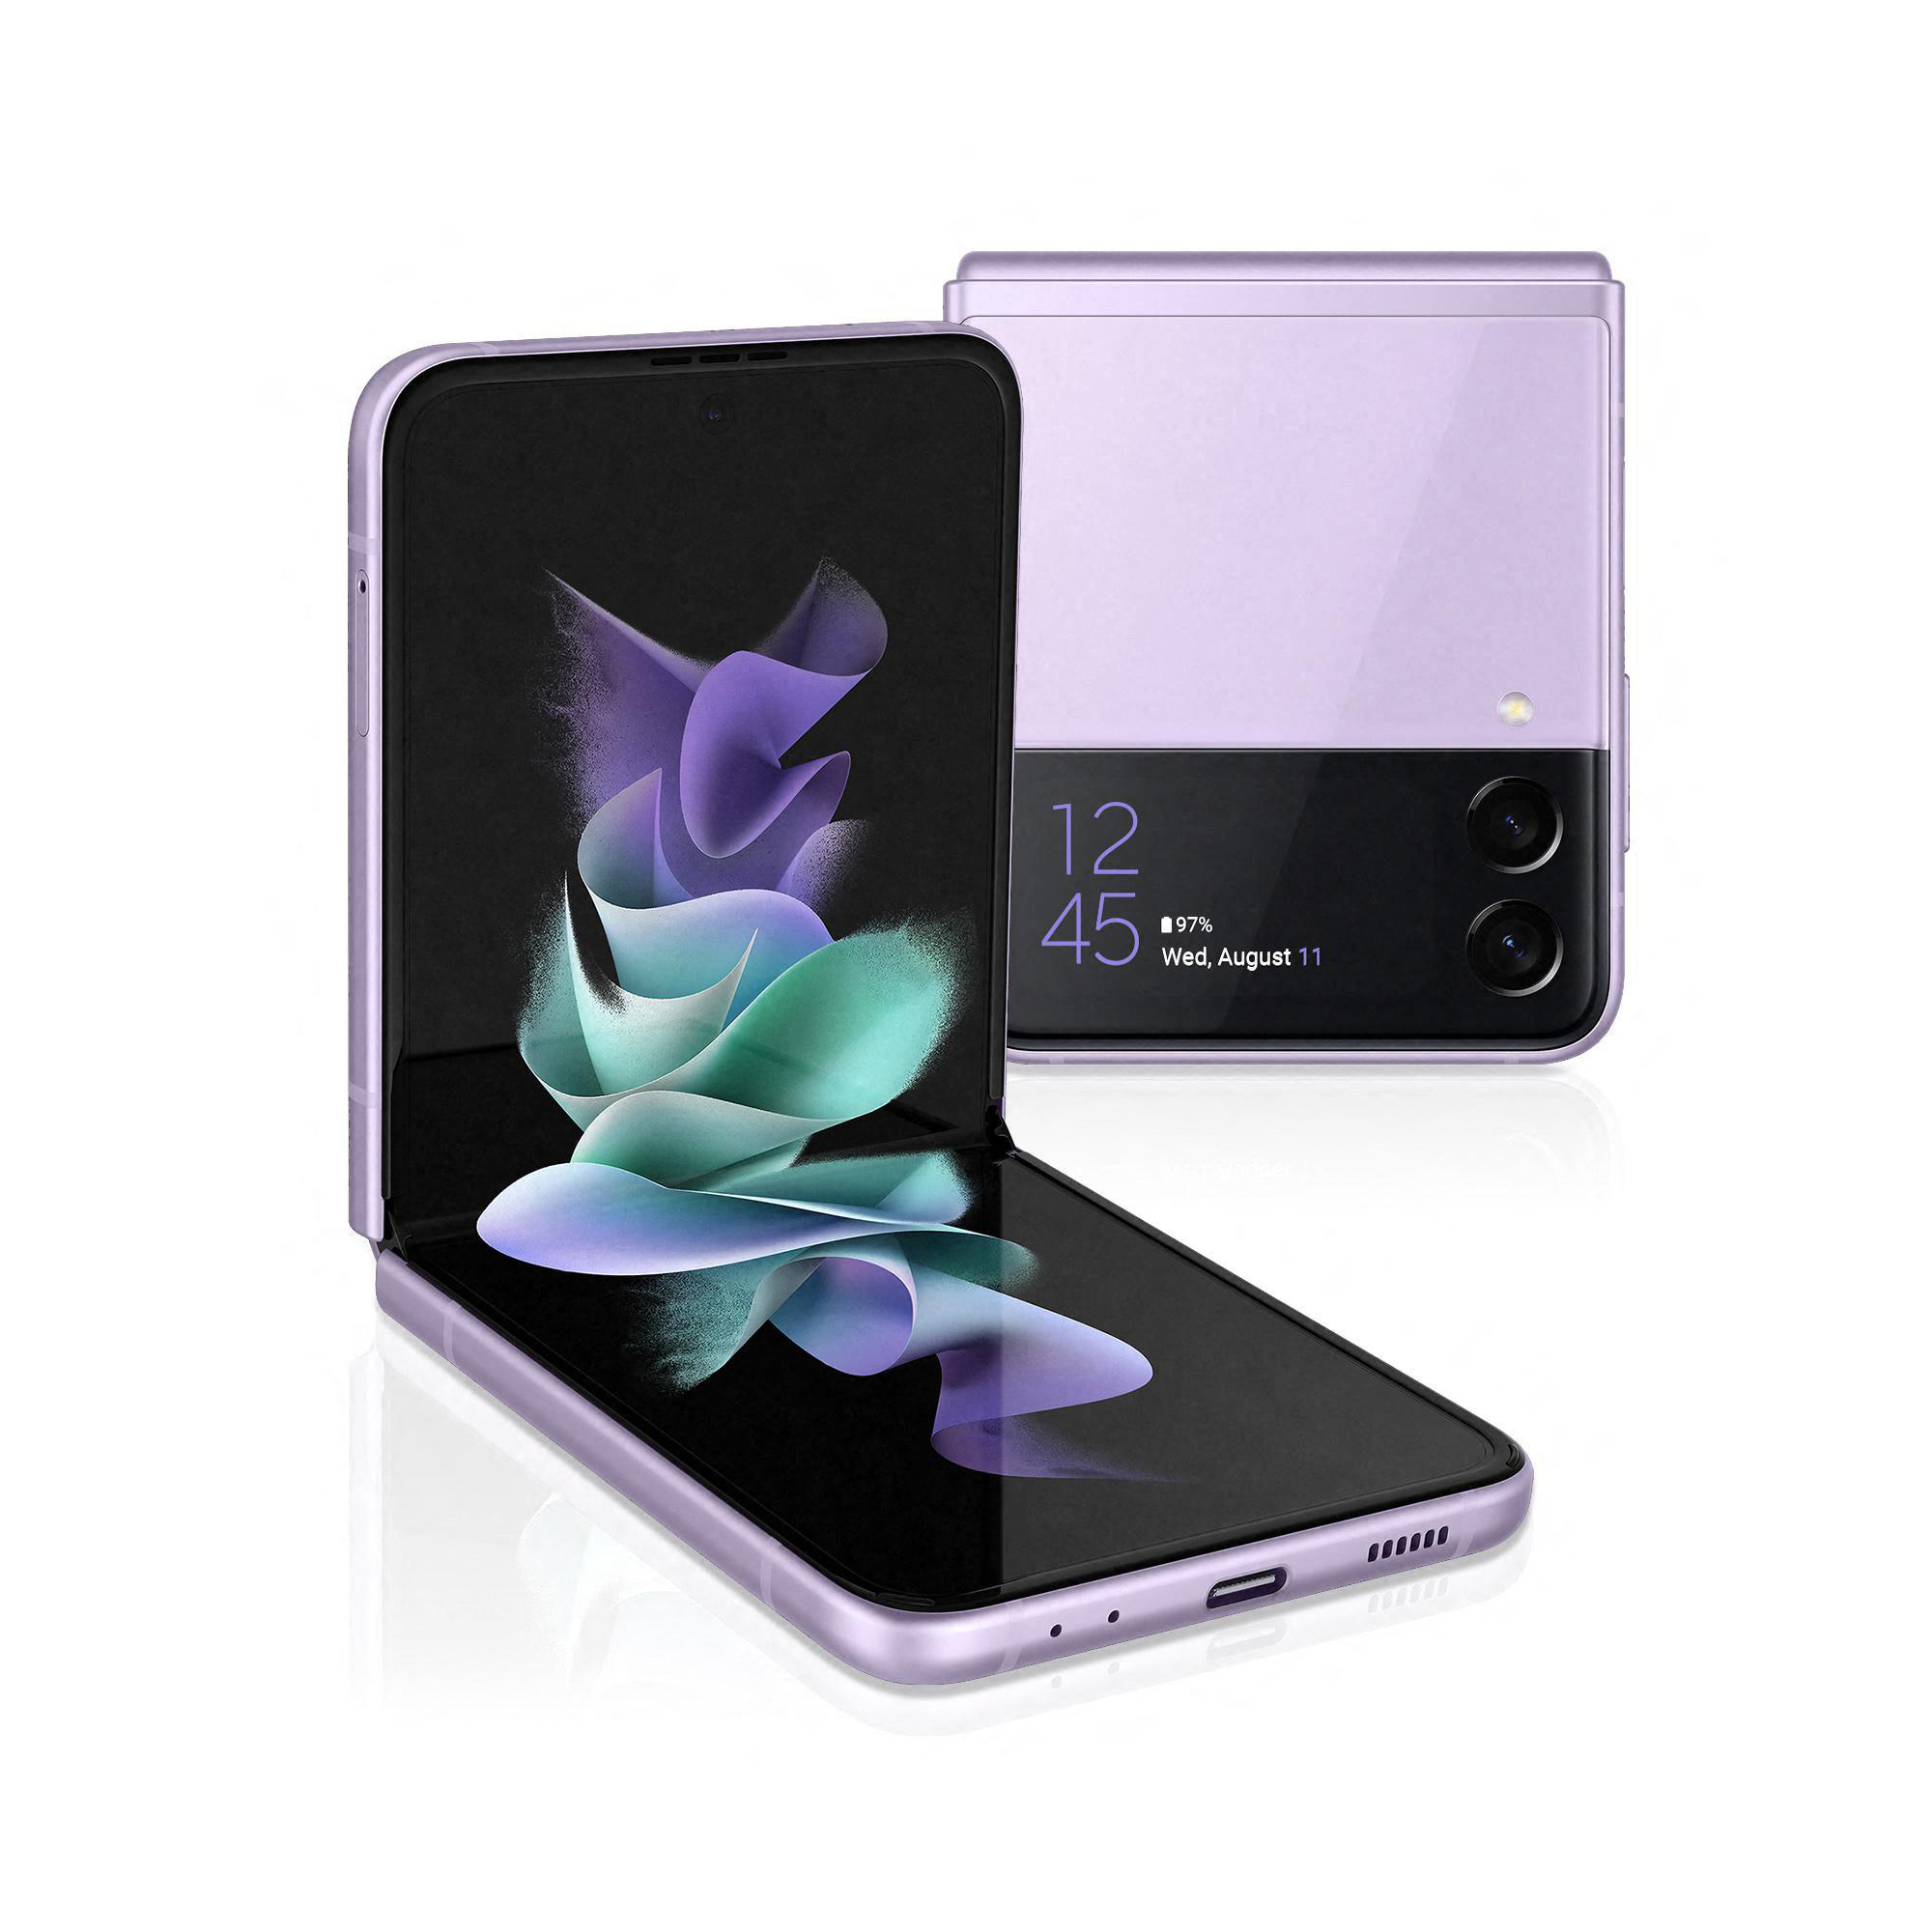 5G 128 Z SAMSUNG Lavender SIM Galaxy Dual Flip3 GB